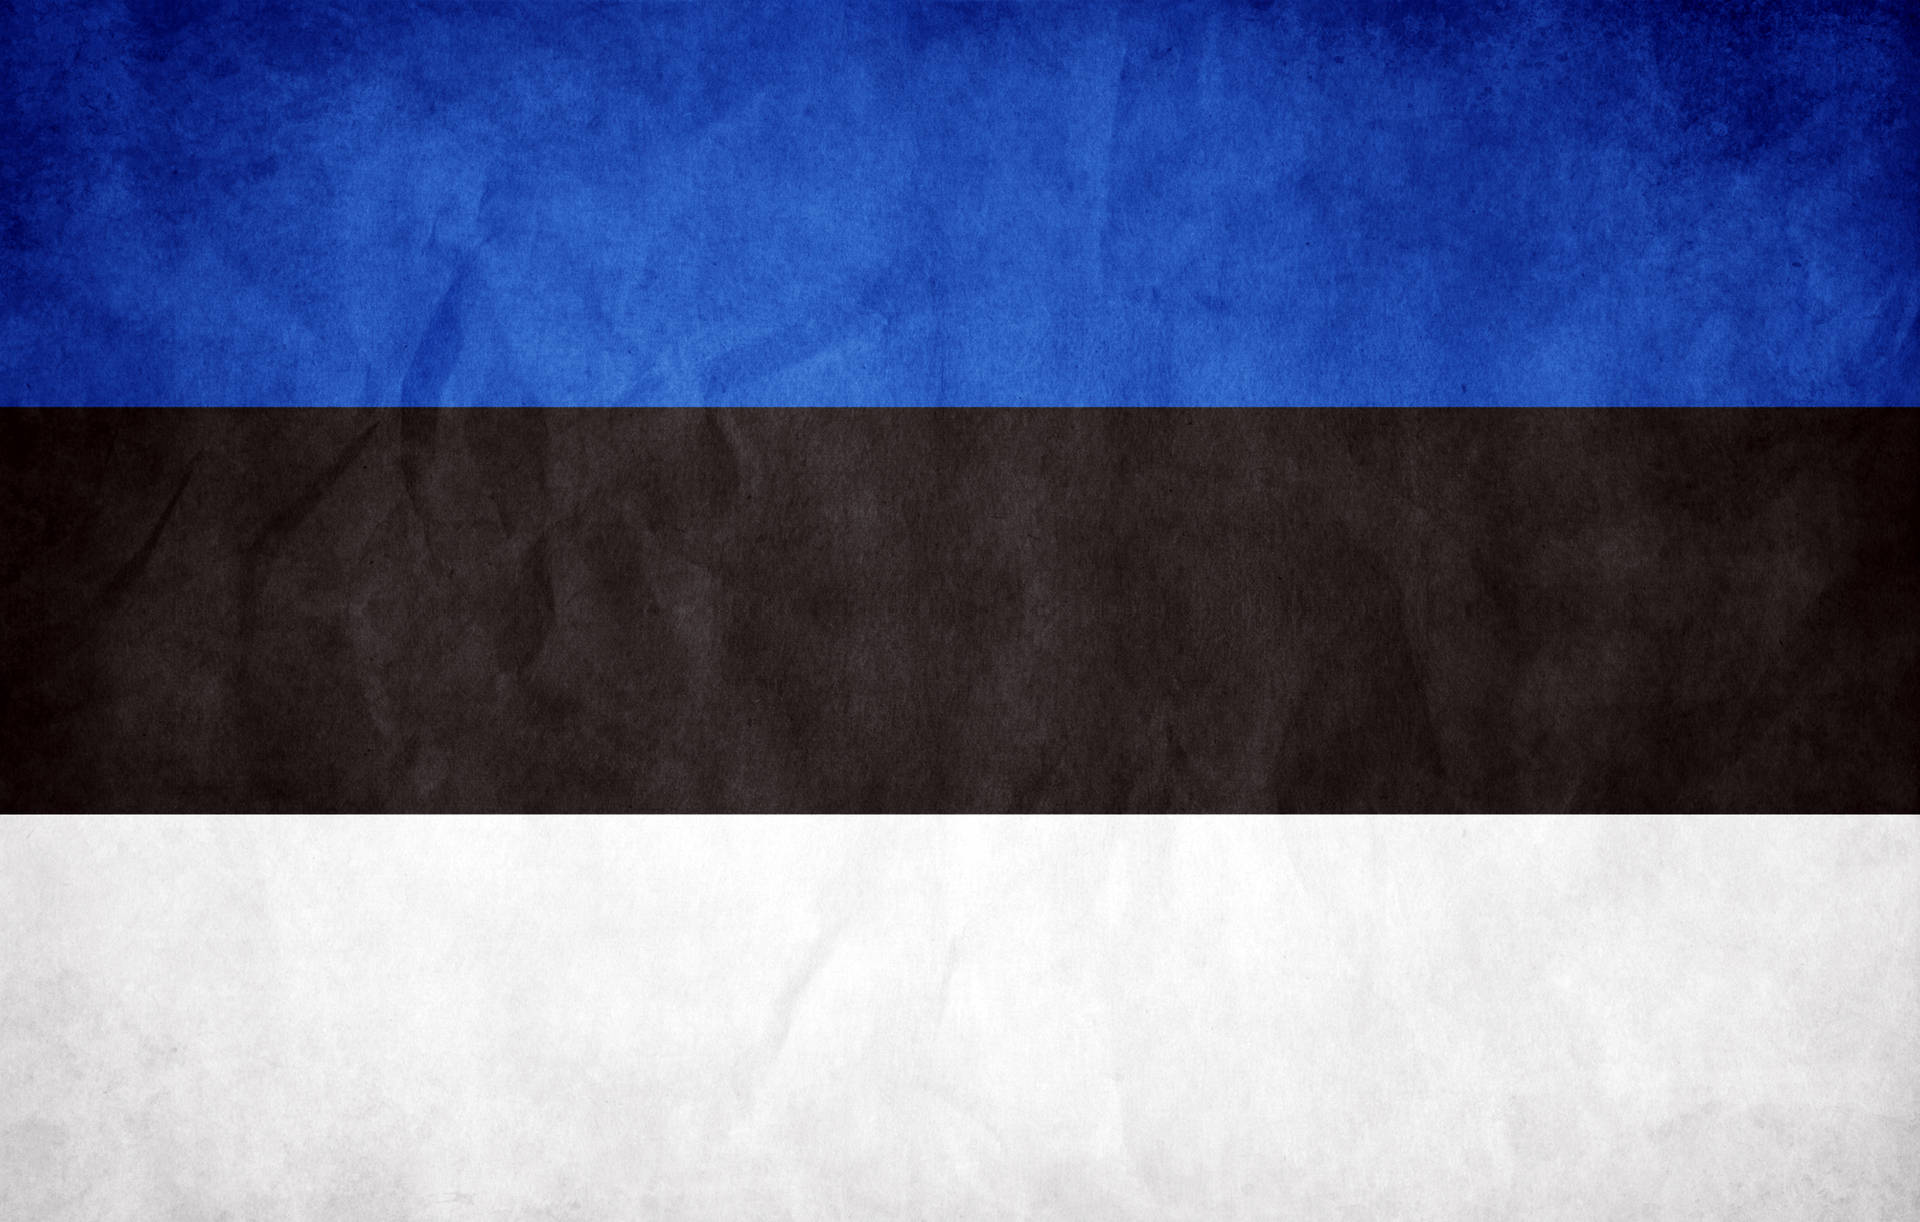 Estland Paper Flag Wallpaper